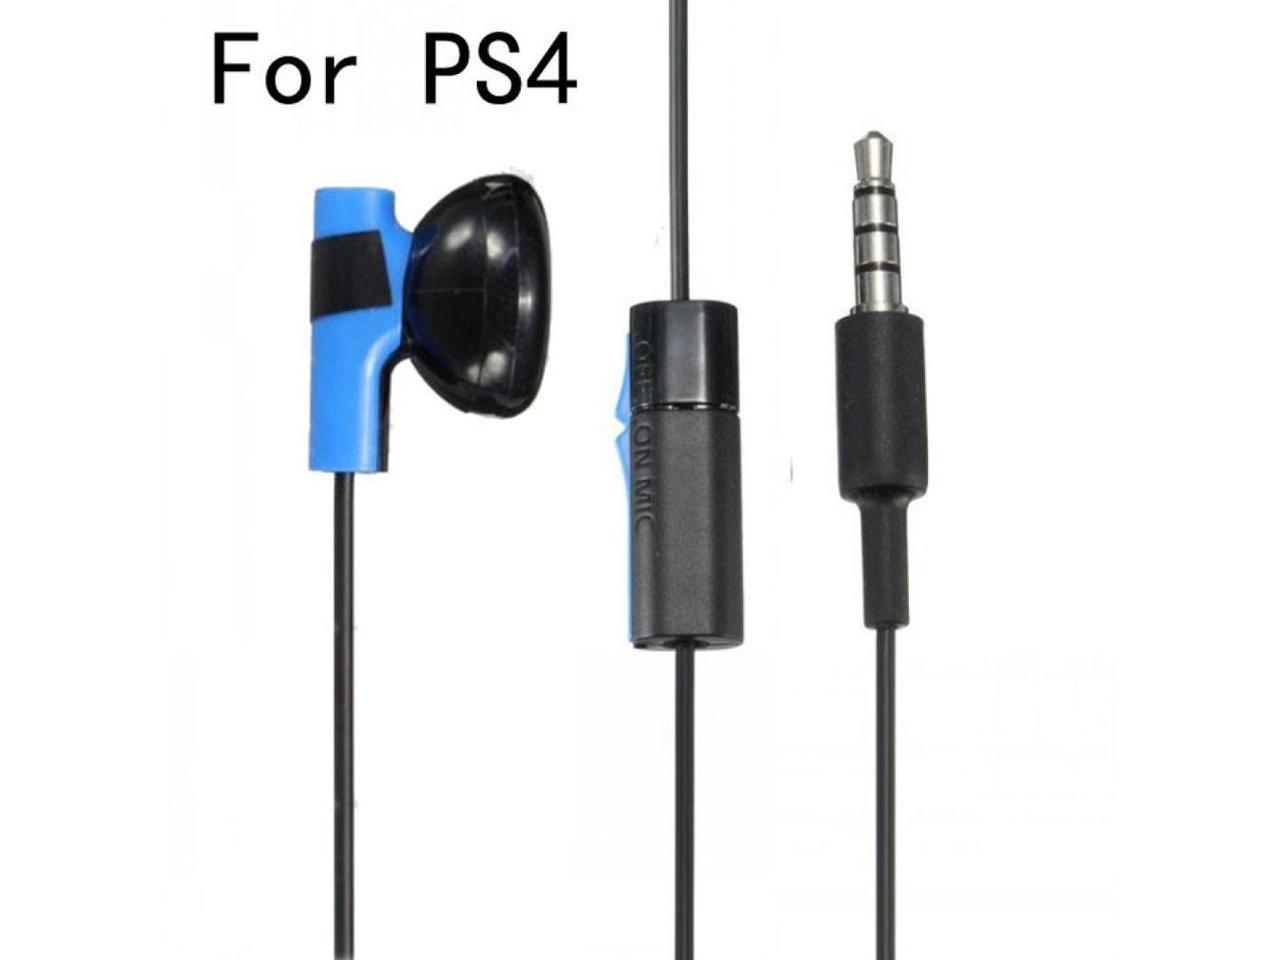 ps4 controller earphones